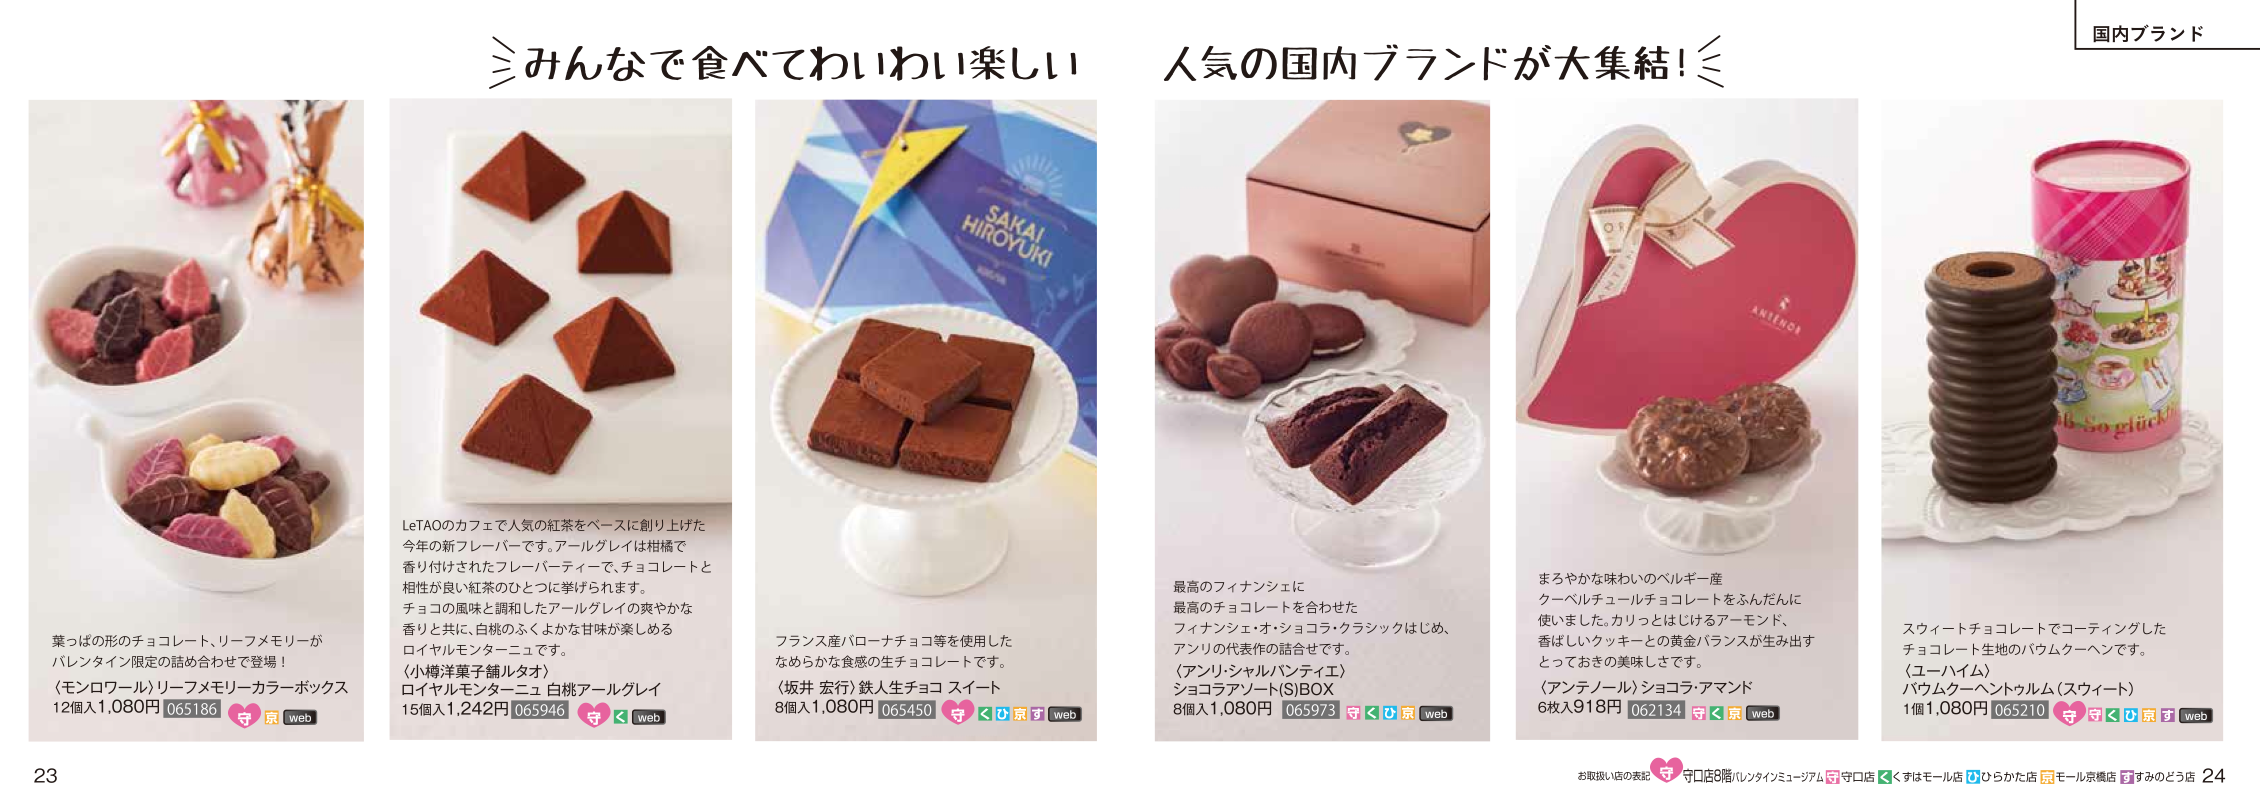 あの マリベル も予約限定とオンラインショッピングで買える 京阪百貨店のバレンタインチョコ一挙公開 ひらつー広告 枚方つーしん